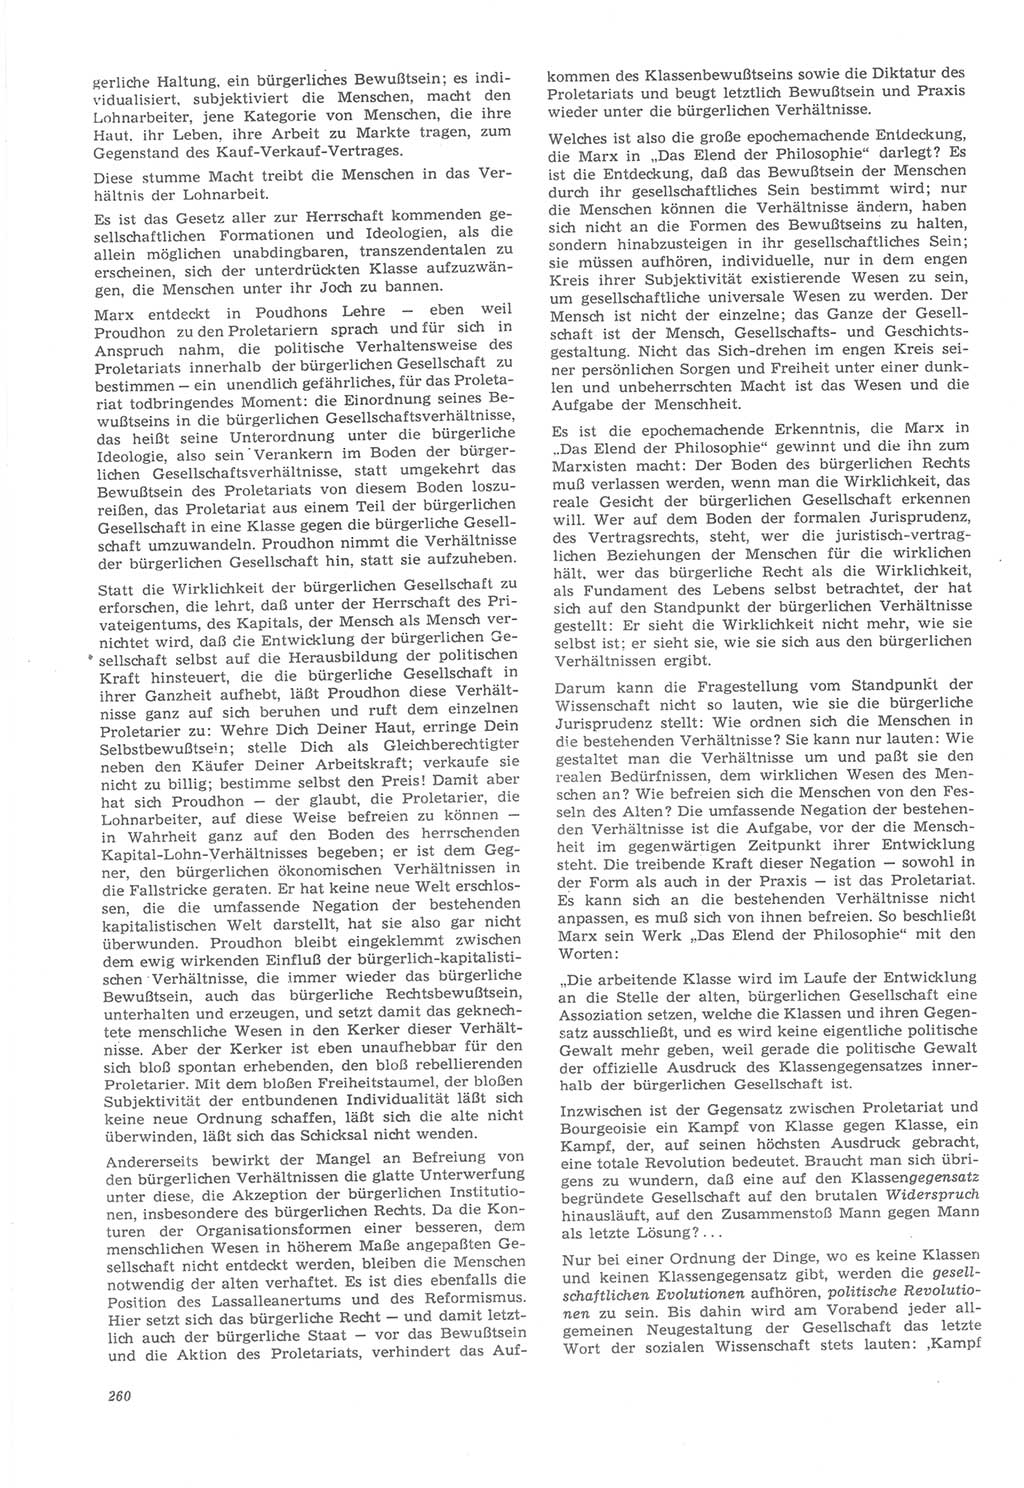 Neue Justiz (NJ), Zeitschrift für Recht und Rechtswissenschaft [Deutsche Demokratische Republik (DDR)], 22. Jahrgang 1968, Seite 260 (NJ DDR 1968, S. 260)